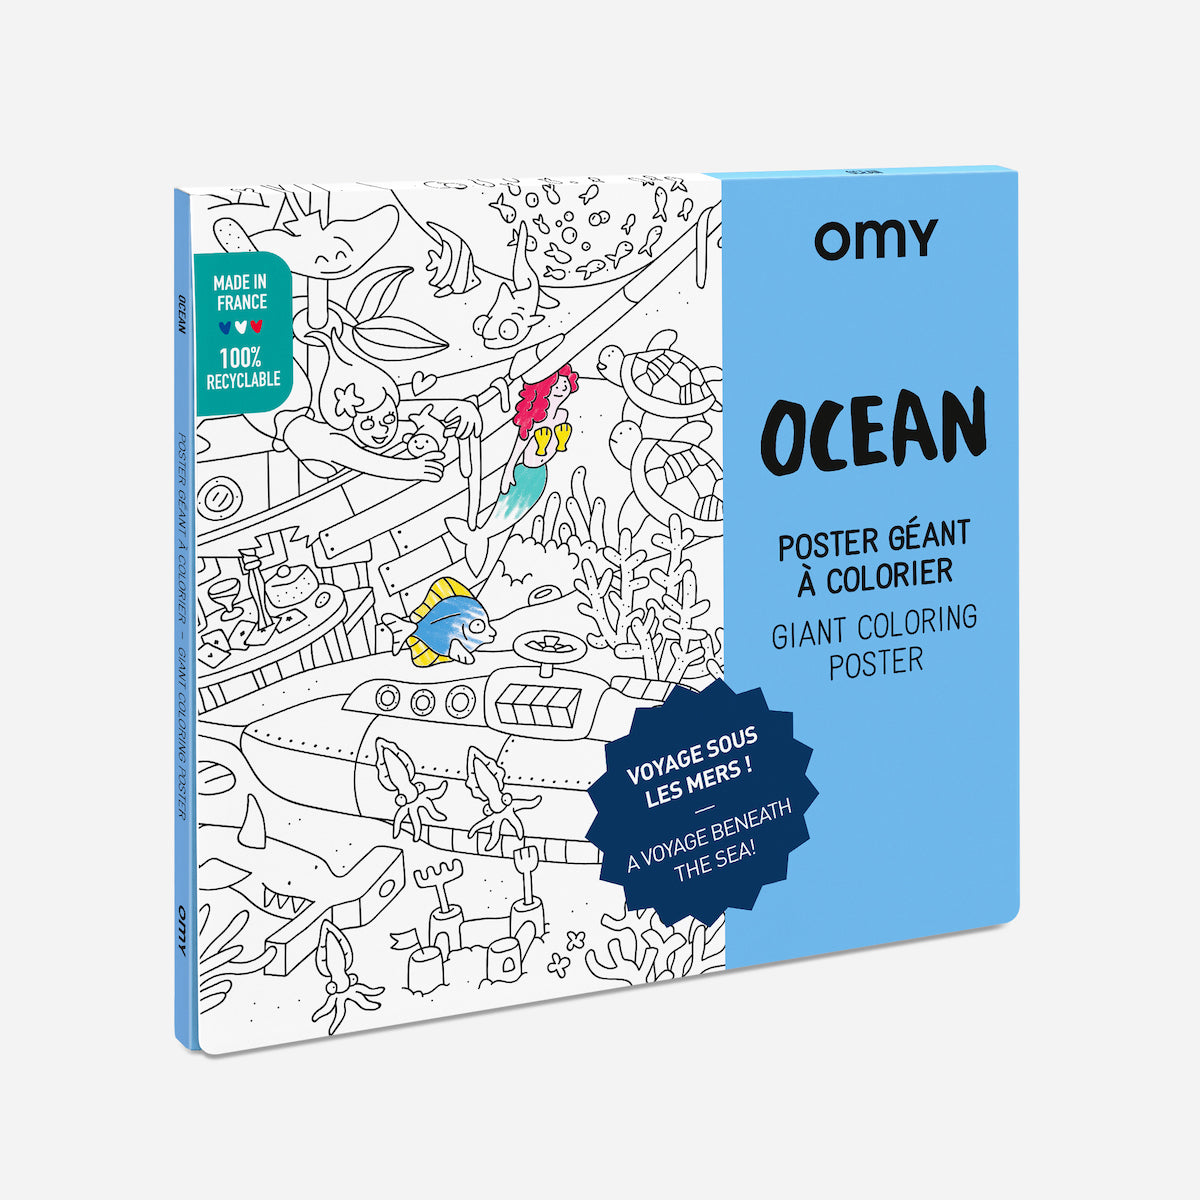 De OMY kleurposter 1 mtr Ocean zorgt voor heel veel uren kleurplezier. Deze grote themakleurplaat neemt je mee in de wondere onder water wereld. Pak je favoriete viltstiften erbij en ga op avontuur! VanZus.